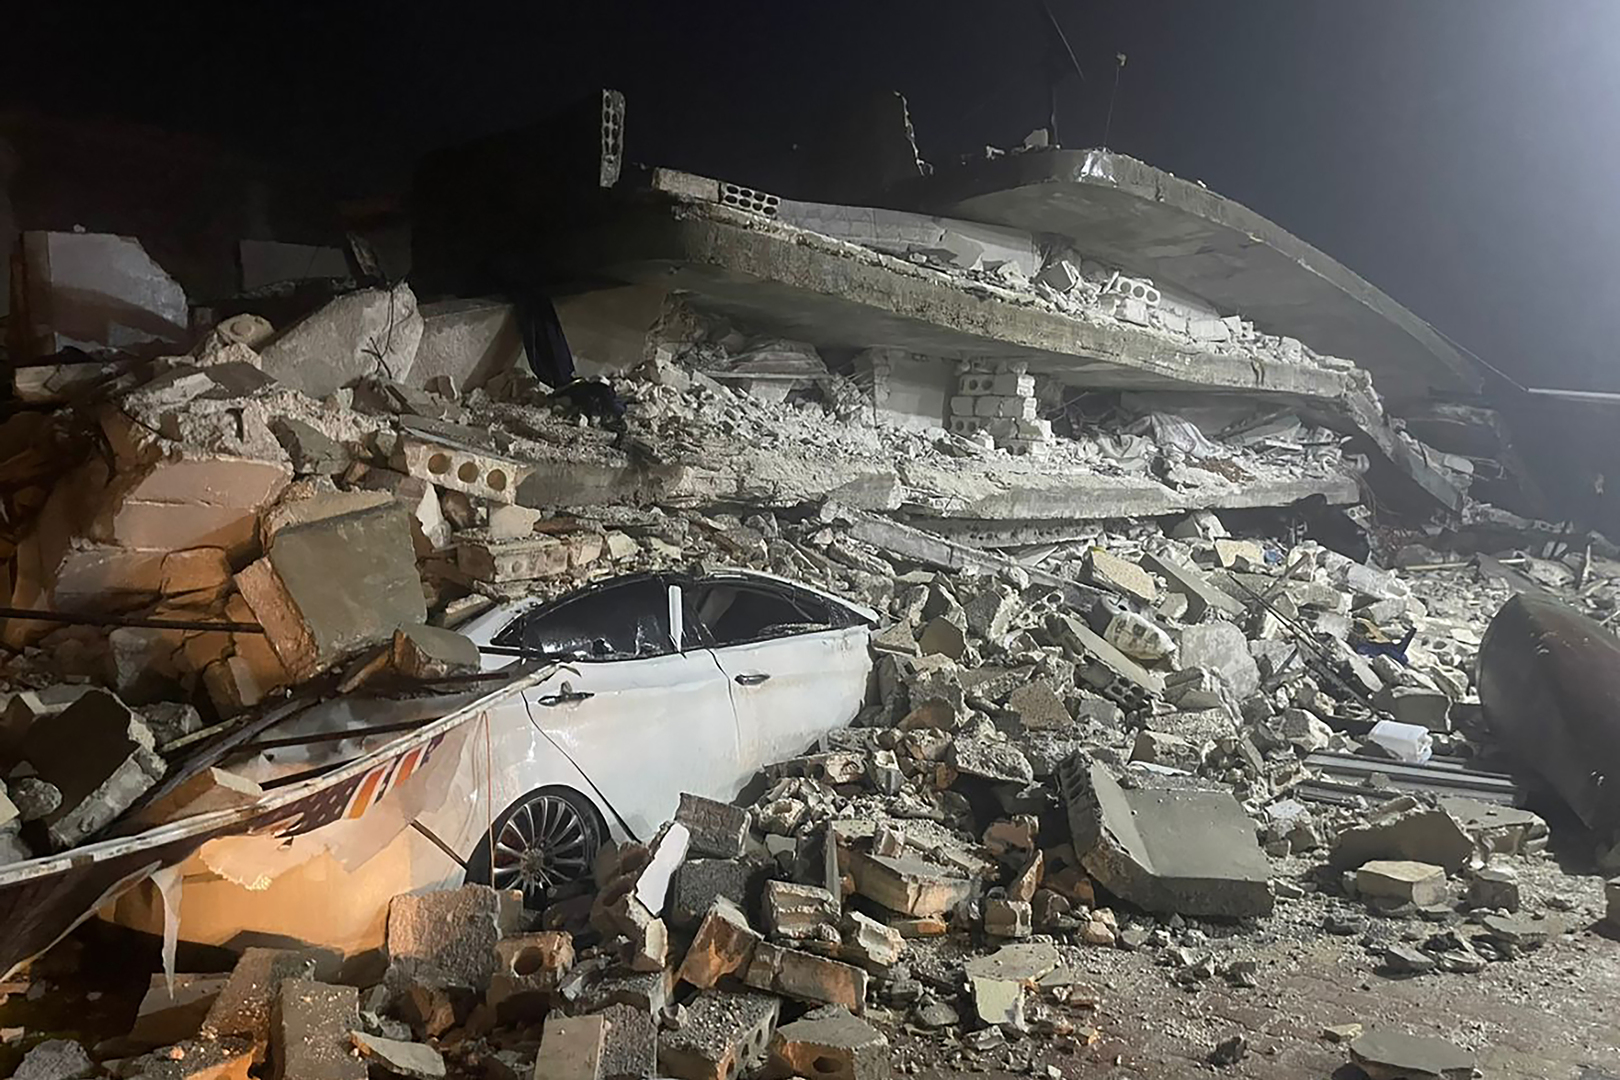 فيديوهات وصور تلخص مشهد الكارثة في تركيا وسوريا جراء الزلزل المدمر